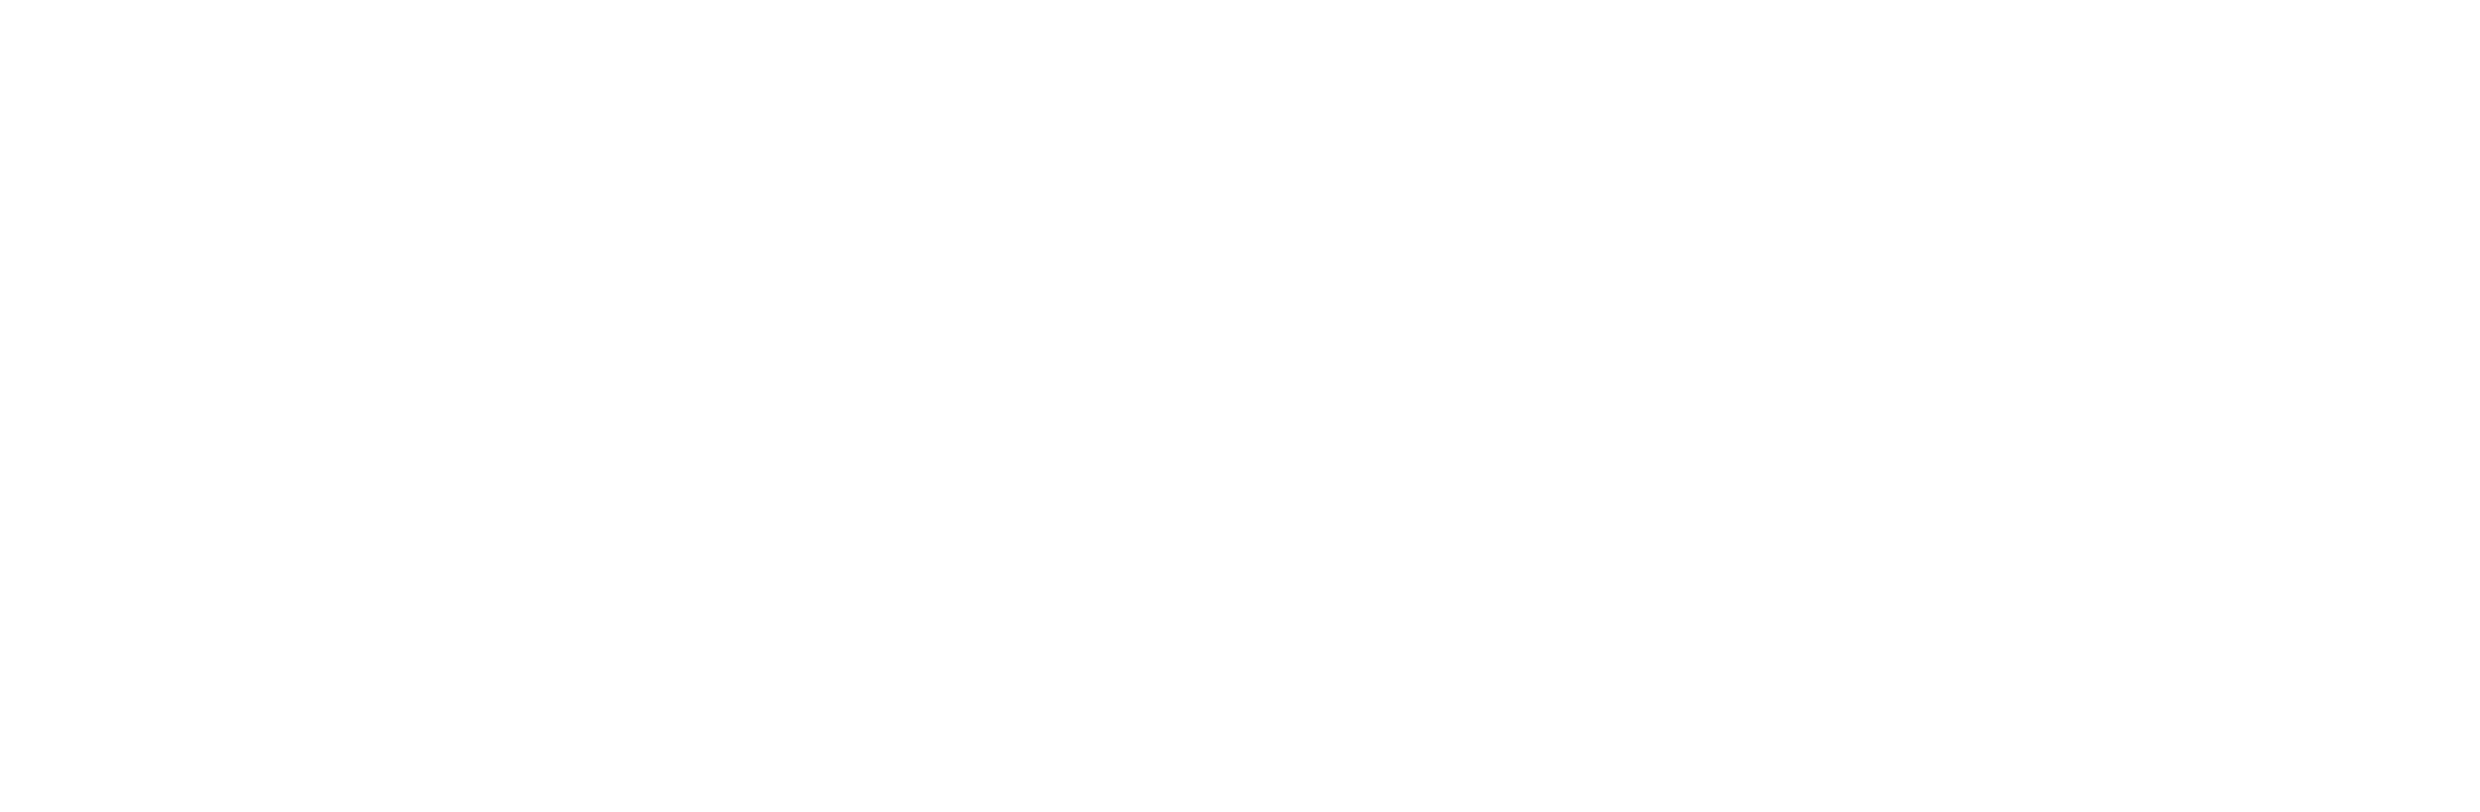 Crown Analysis